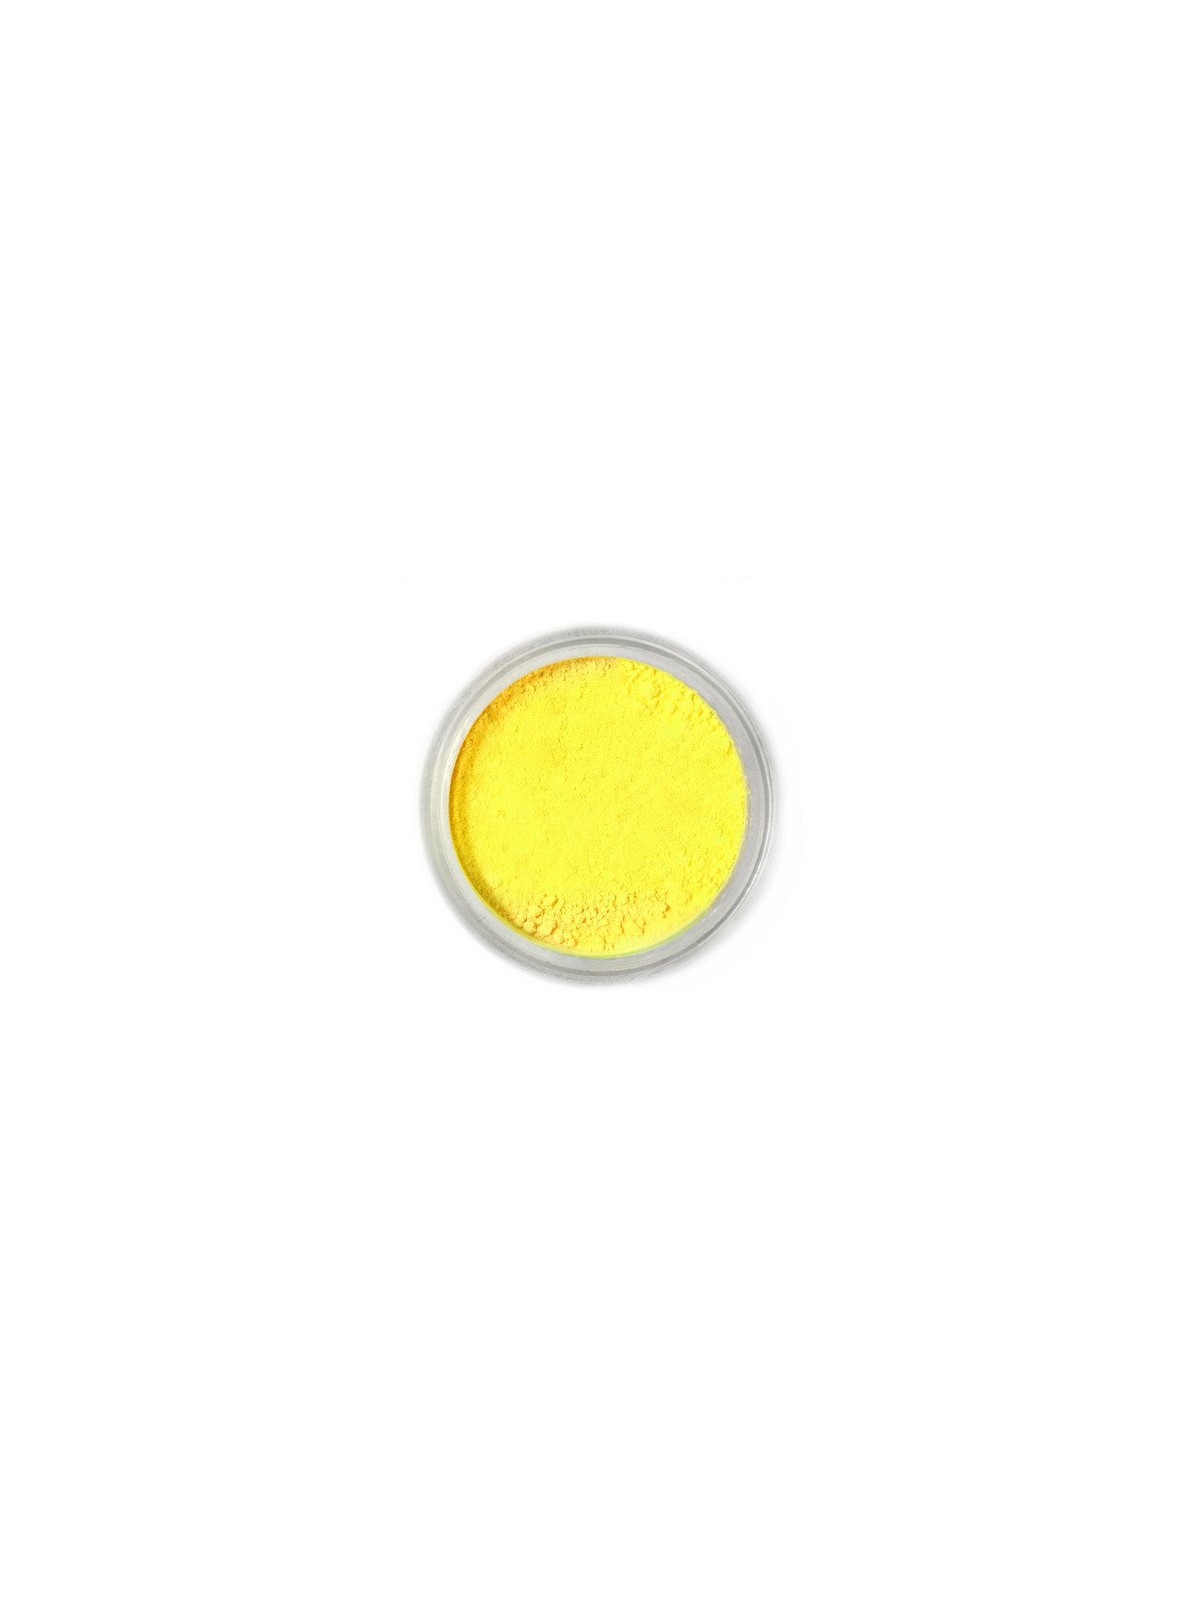 Jedlá prachová barva Fractal - Lemon Yellow, Citromsárga (3 g)